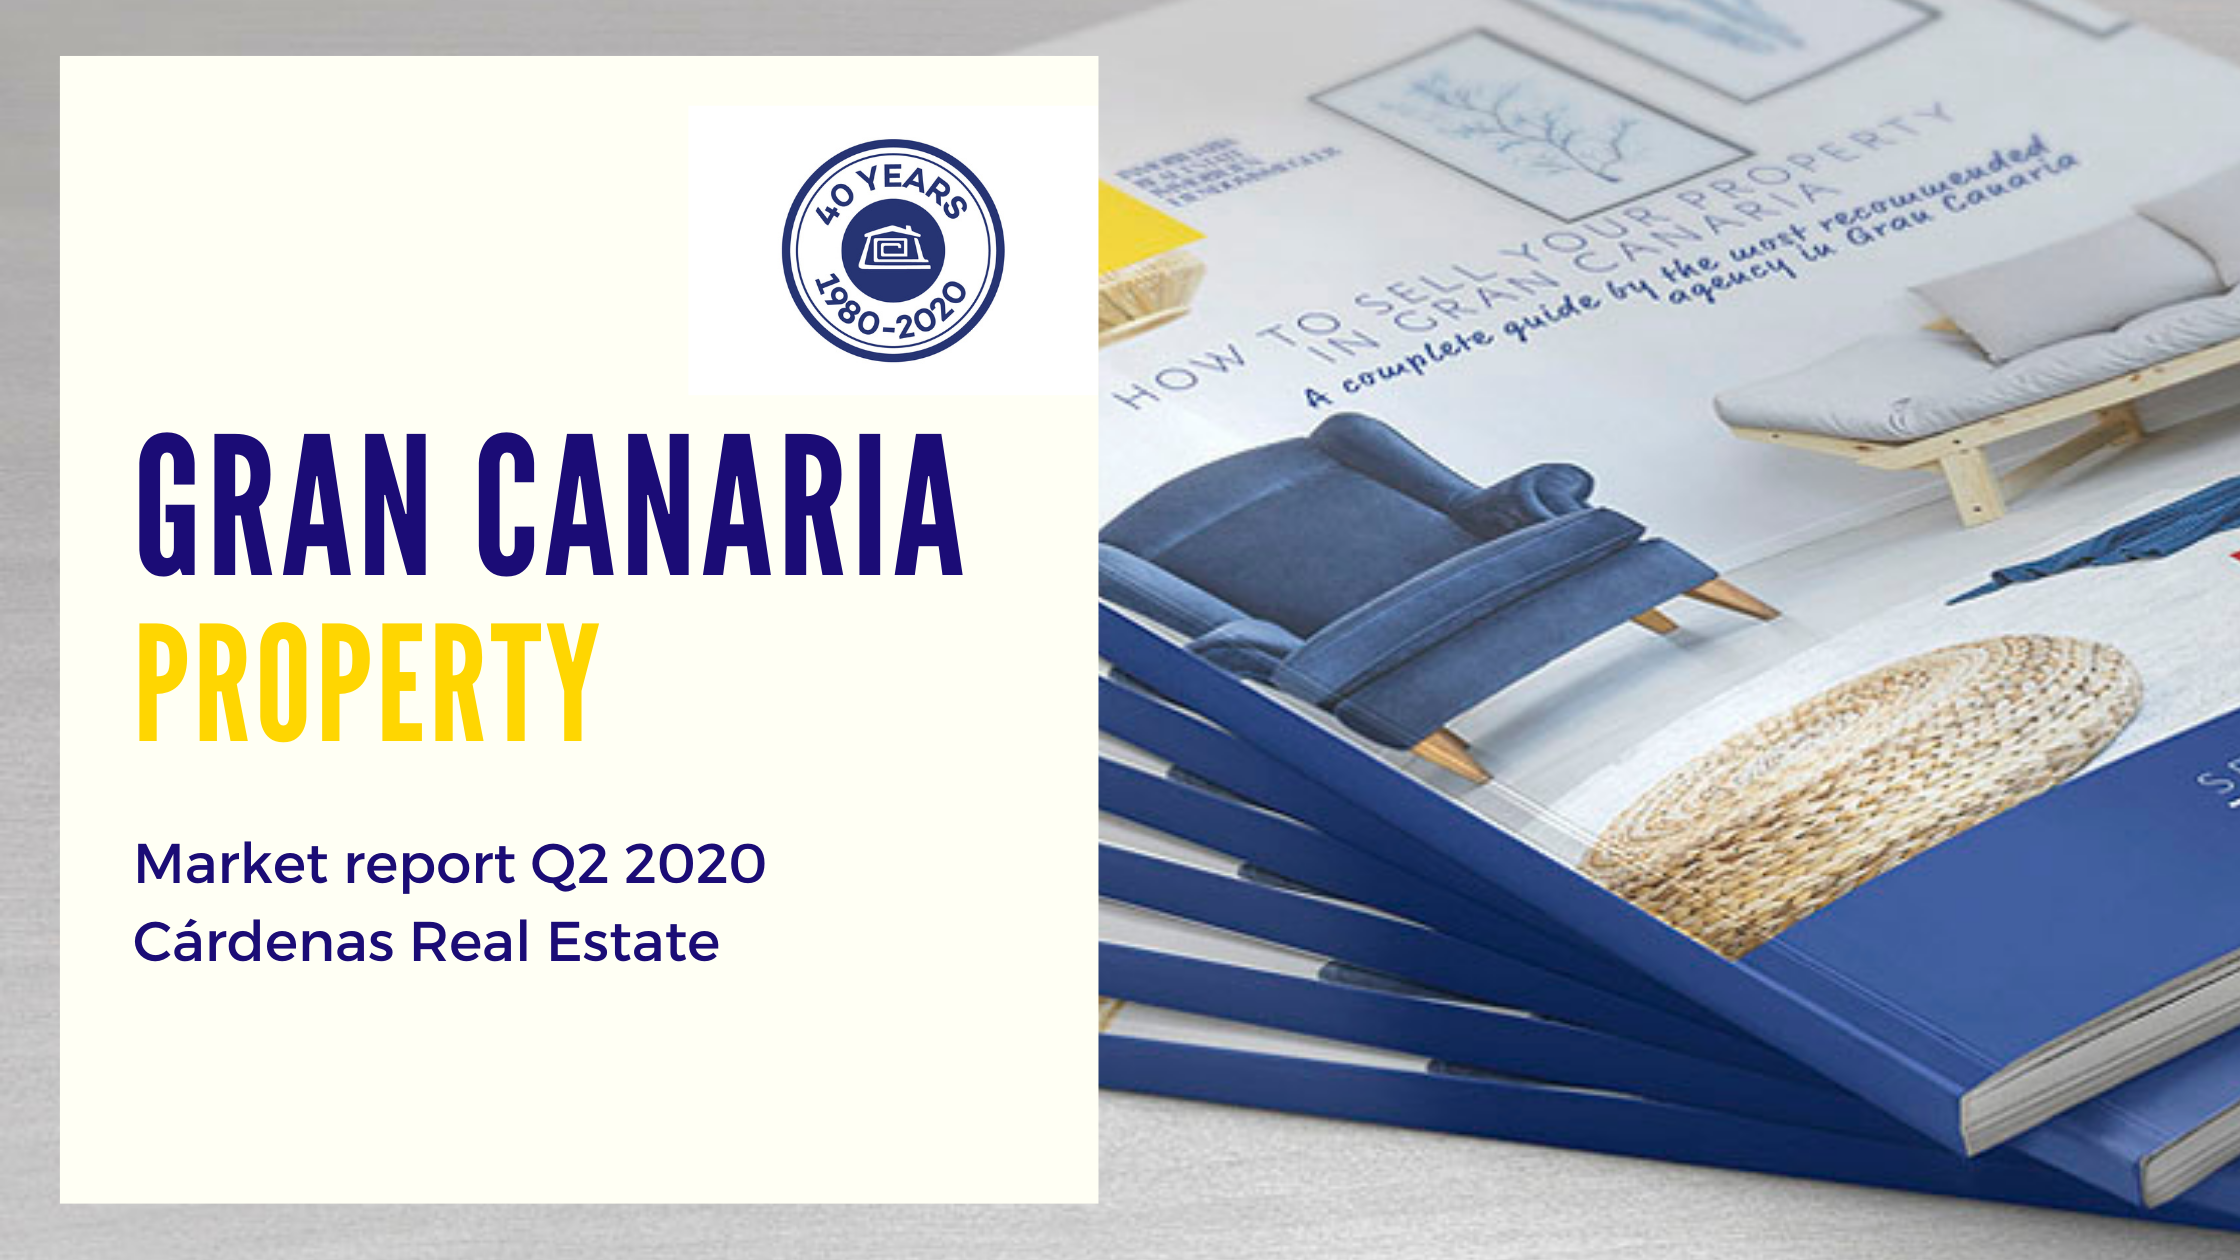 Cardenas Real Estate: Gran Canaria Property Market report|Bericht Q2 2020 von Cárdenas Immobilien|Informe del Mercado Inmobiliario en Gran Canaria - Segundo Trimestre de 2020 por Inmobiliaria Cárdenas|eiendomsmarkedet|